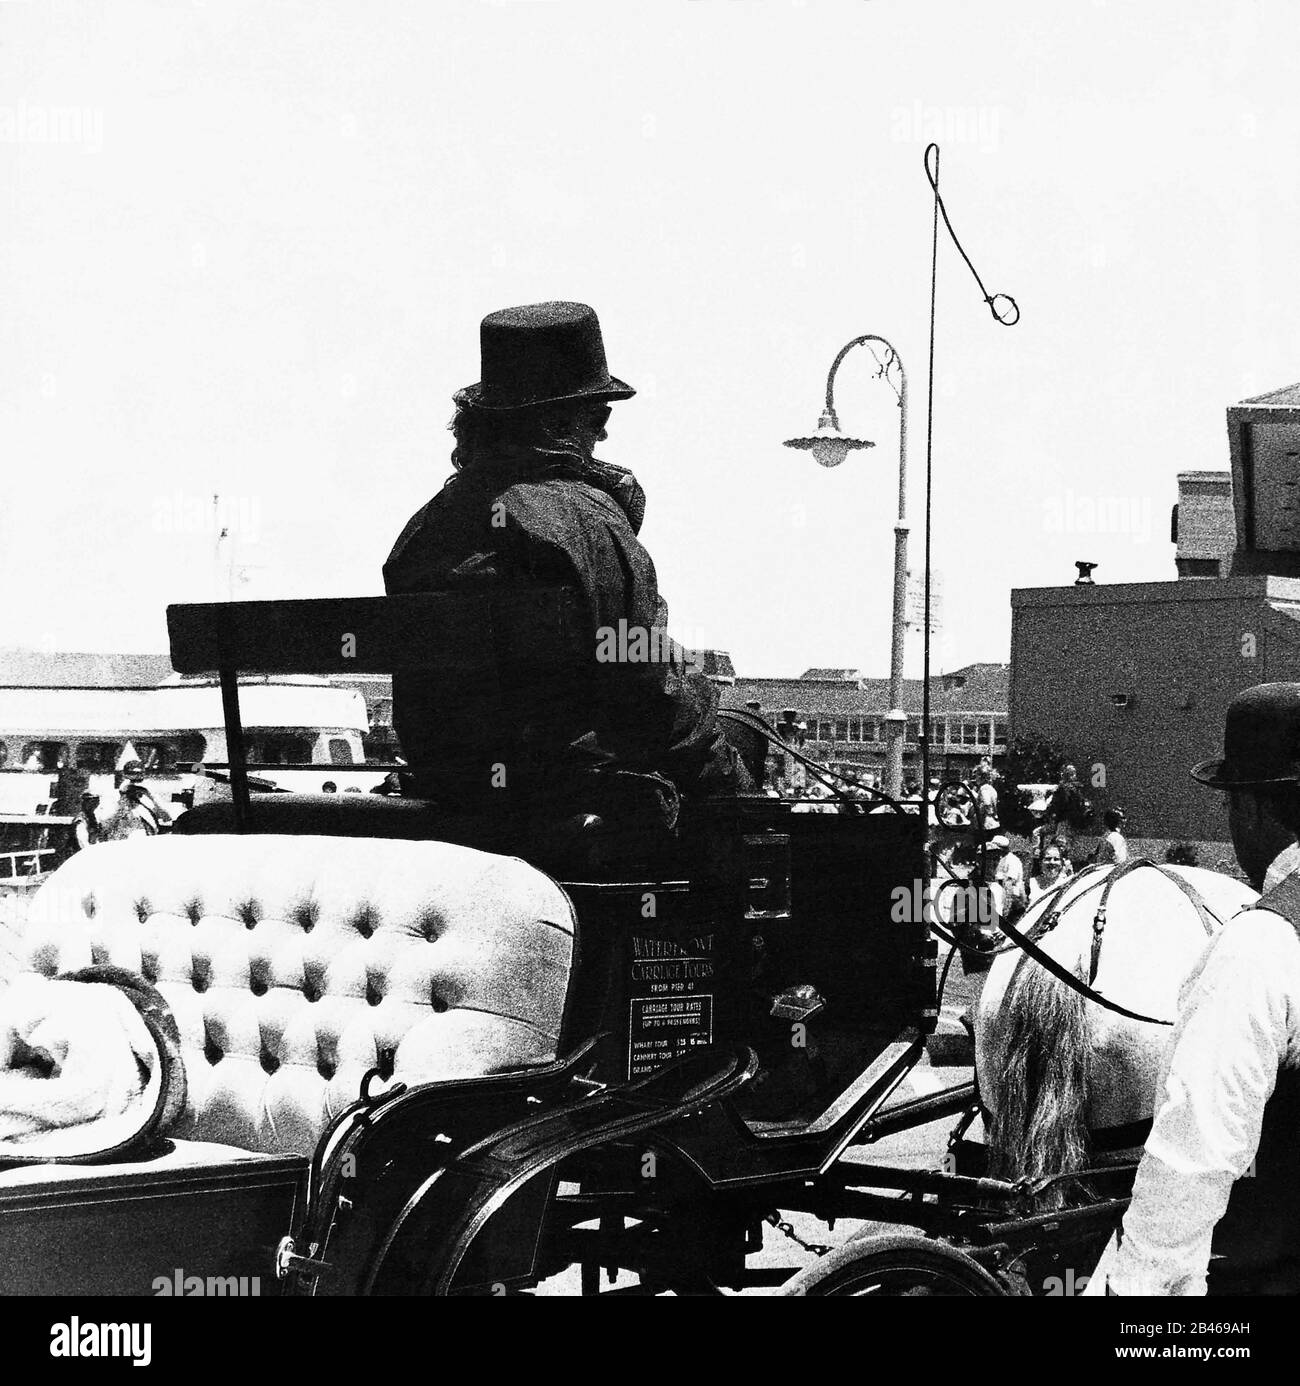 Pferdekutschenfahrer mit Bowler Hut, Horse Cart, Derby Hut, Vereinigte Staaten von Amerika, USA, Vereinigte Staaten, US, 1999, alter Jahrgang 1900s Bild Stockfoto